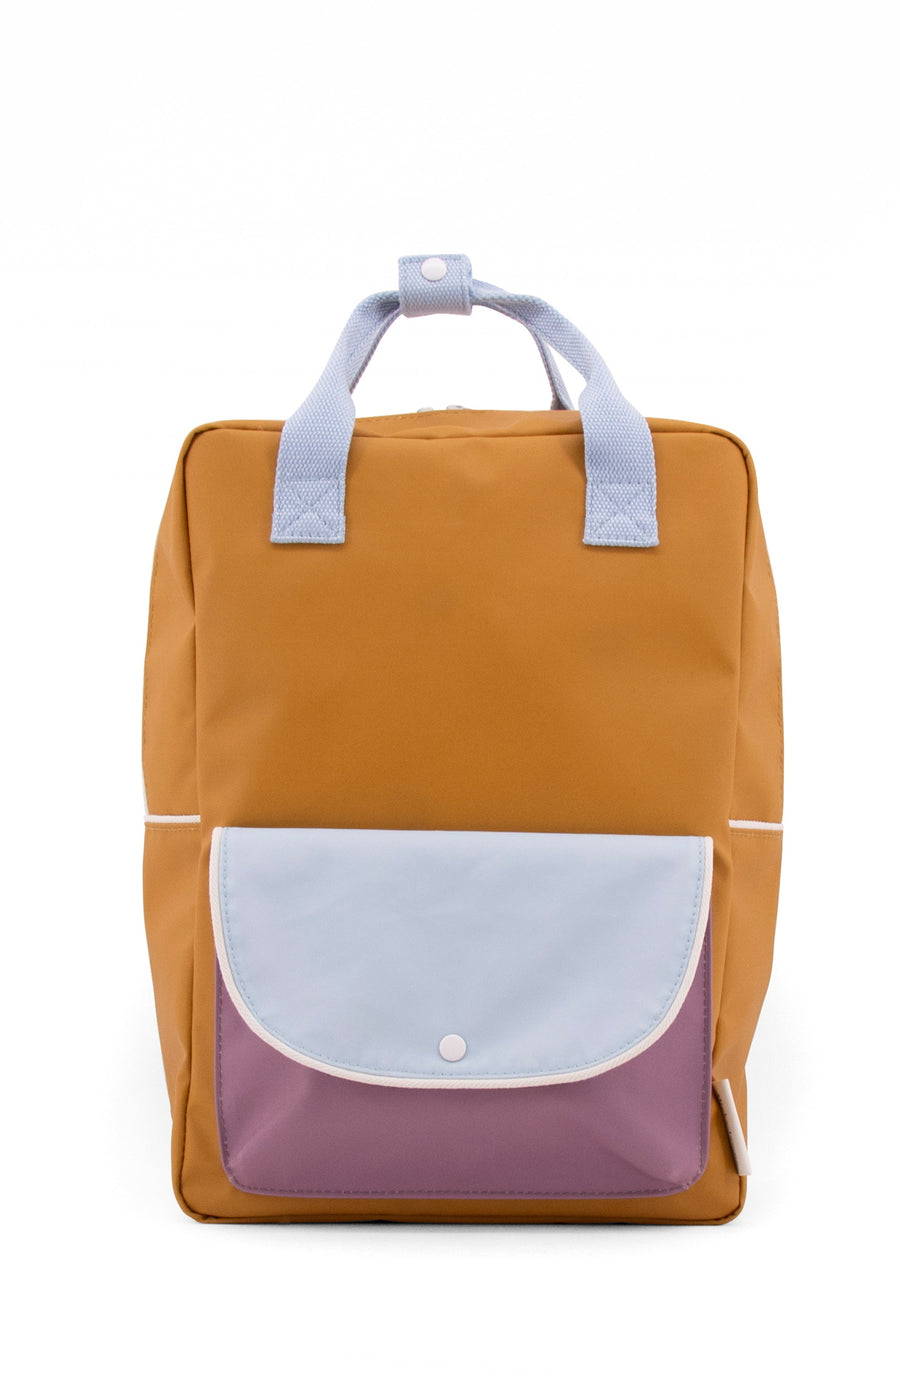 Sticky Lemon Wanderer Envelope Large Backpack, Caramel Fudge/Sky Blue/Pirate Purple